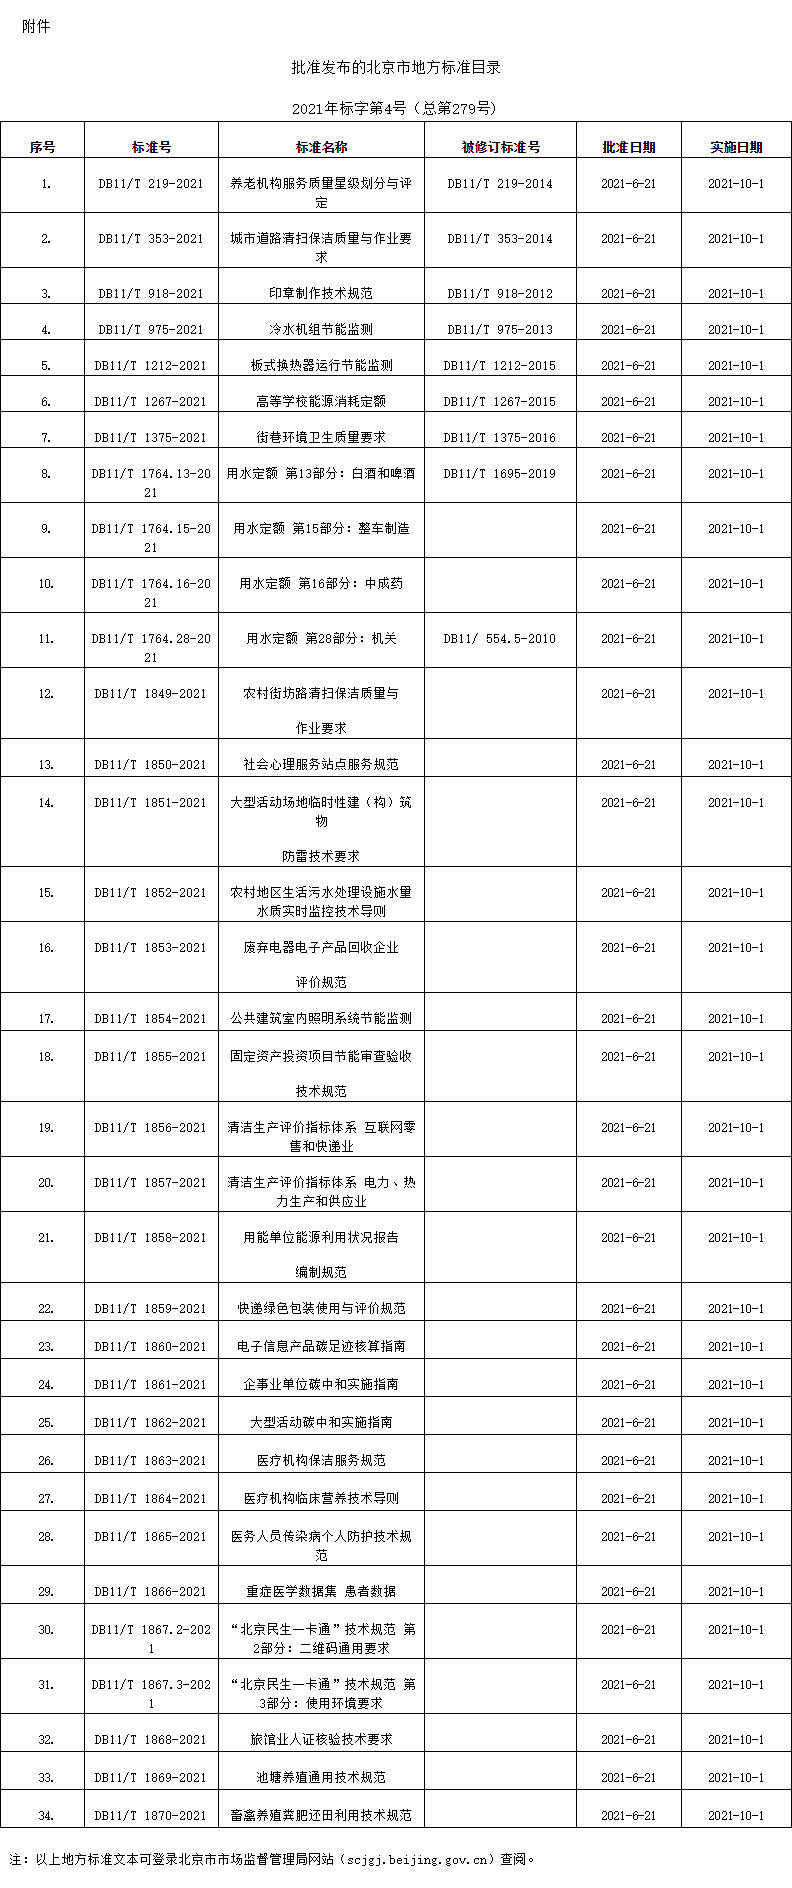 附件：批准发布的北京市地方标准目录.png